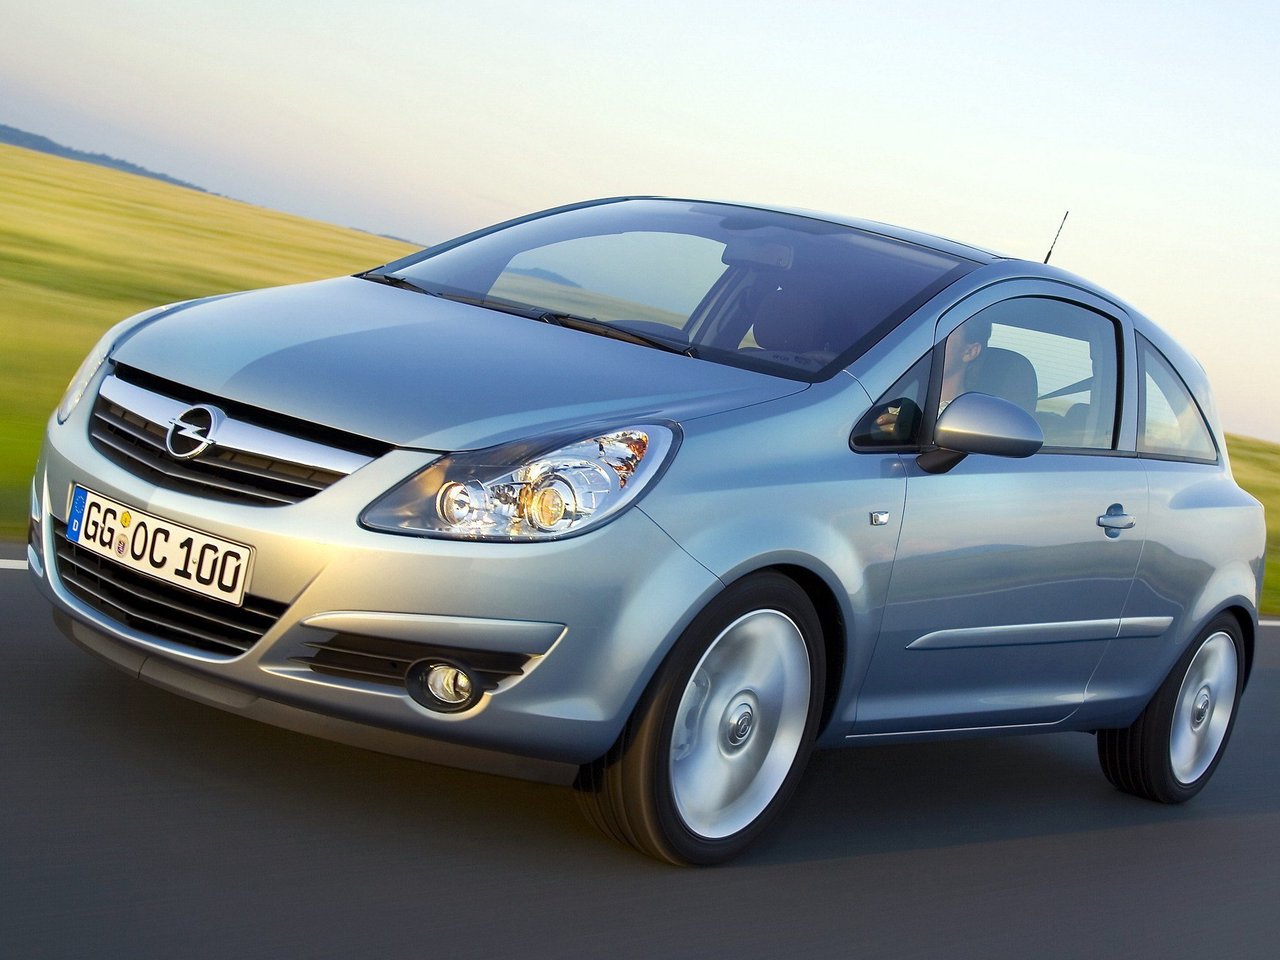 Расход газа шести комплектаций хэтчбека три двери Opel Corsa. Разница стоимости заправки газом и бензином. Автономный пробег до и после установки ГБО.